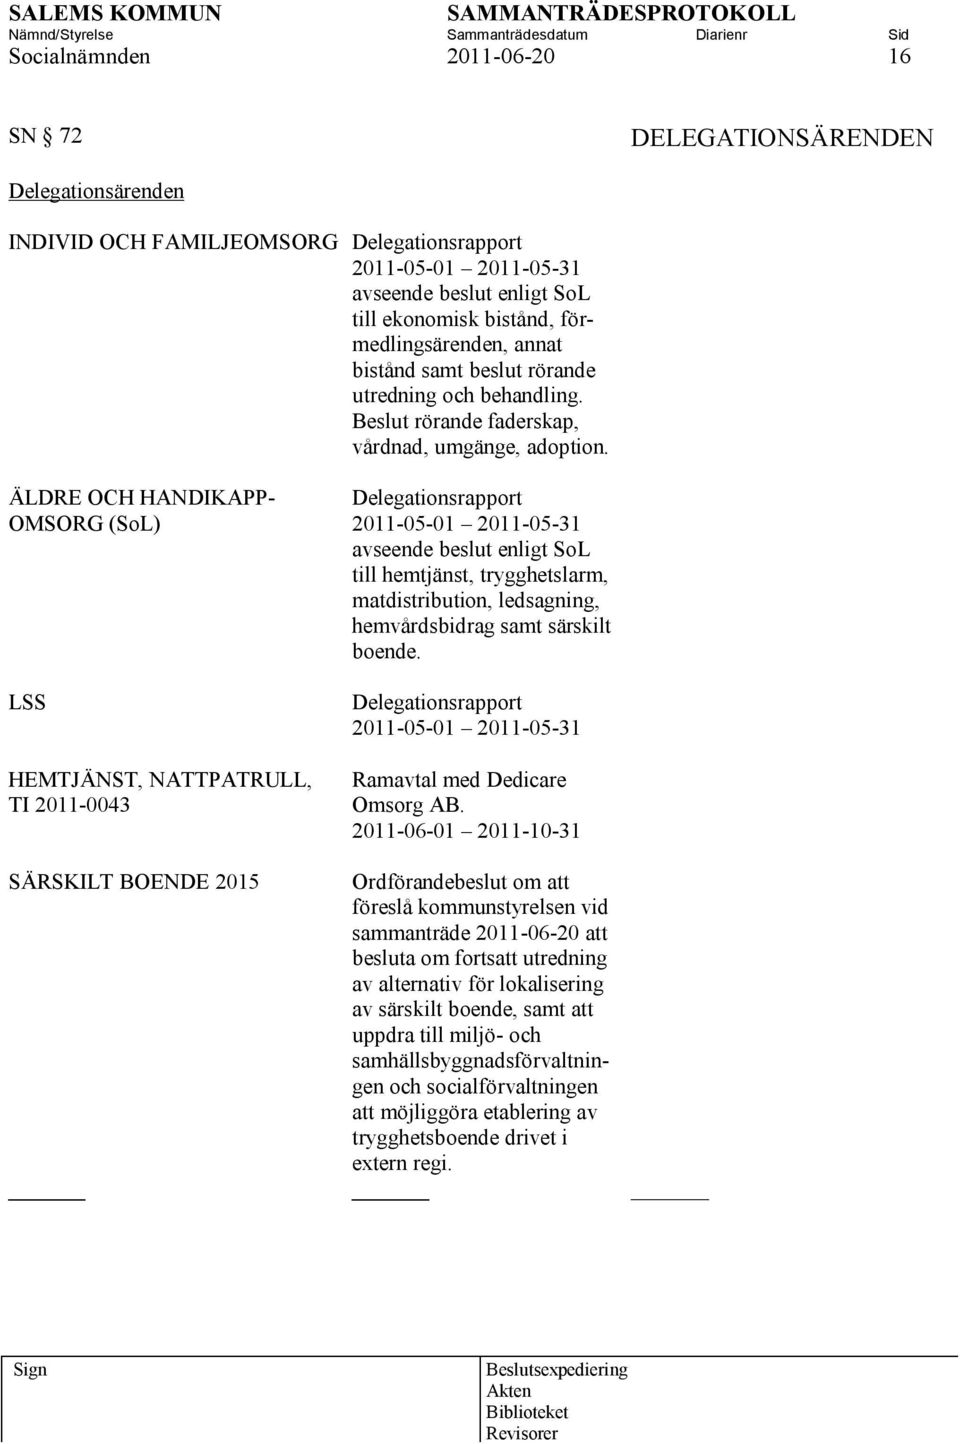 ÄLDRE OCH HANDIKAPP- OMSORG (SoL) LSS HEMTJÄNST, NATTPATRULL, TI 2011-0043 Delegationsrapport 2011-05-01 2011-05-31 avseende beslut enligt SoL till hemtjänst, trygghetslarm, matdistribution,